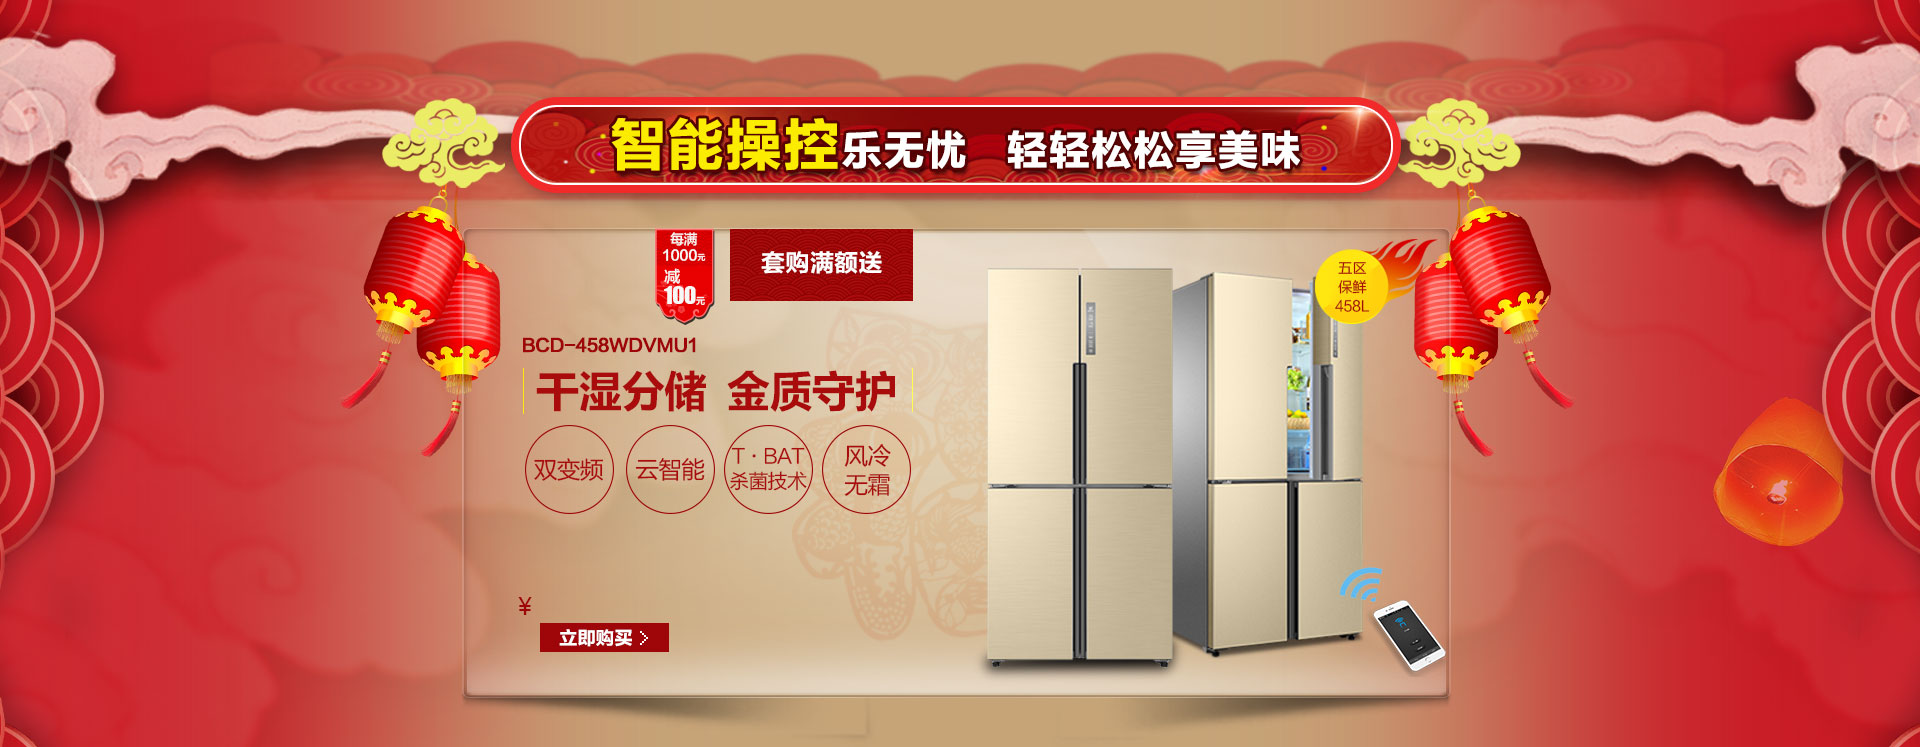 海尔冰箱新年活动 - 京东家用电器|大 家 电|冰箱专题活动-京东